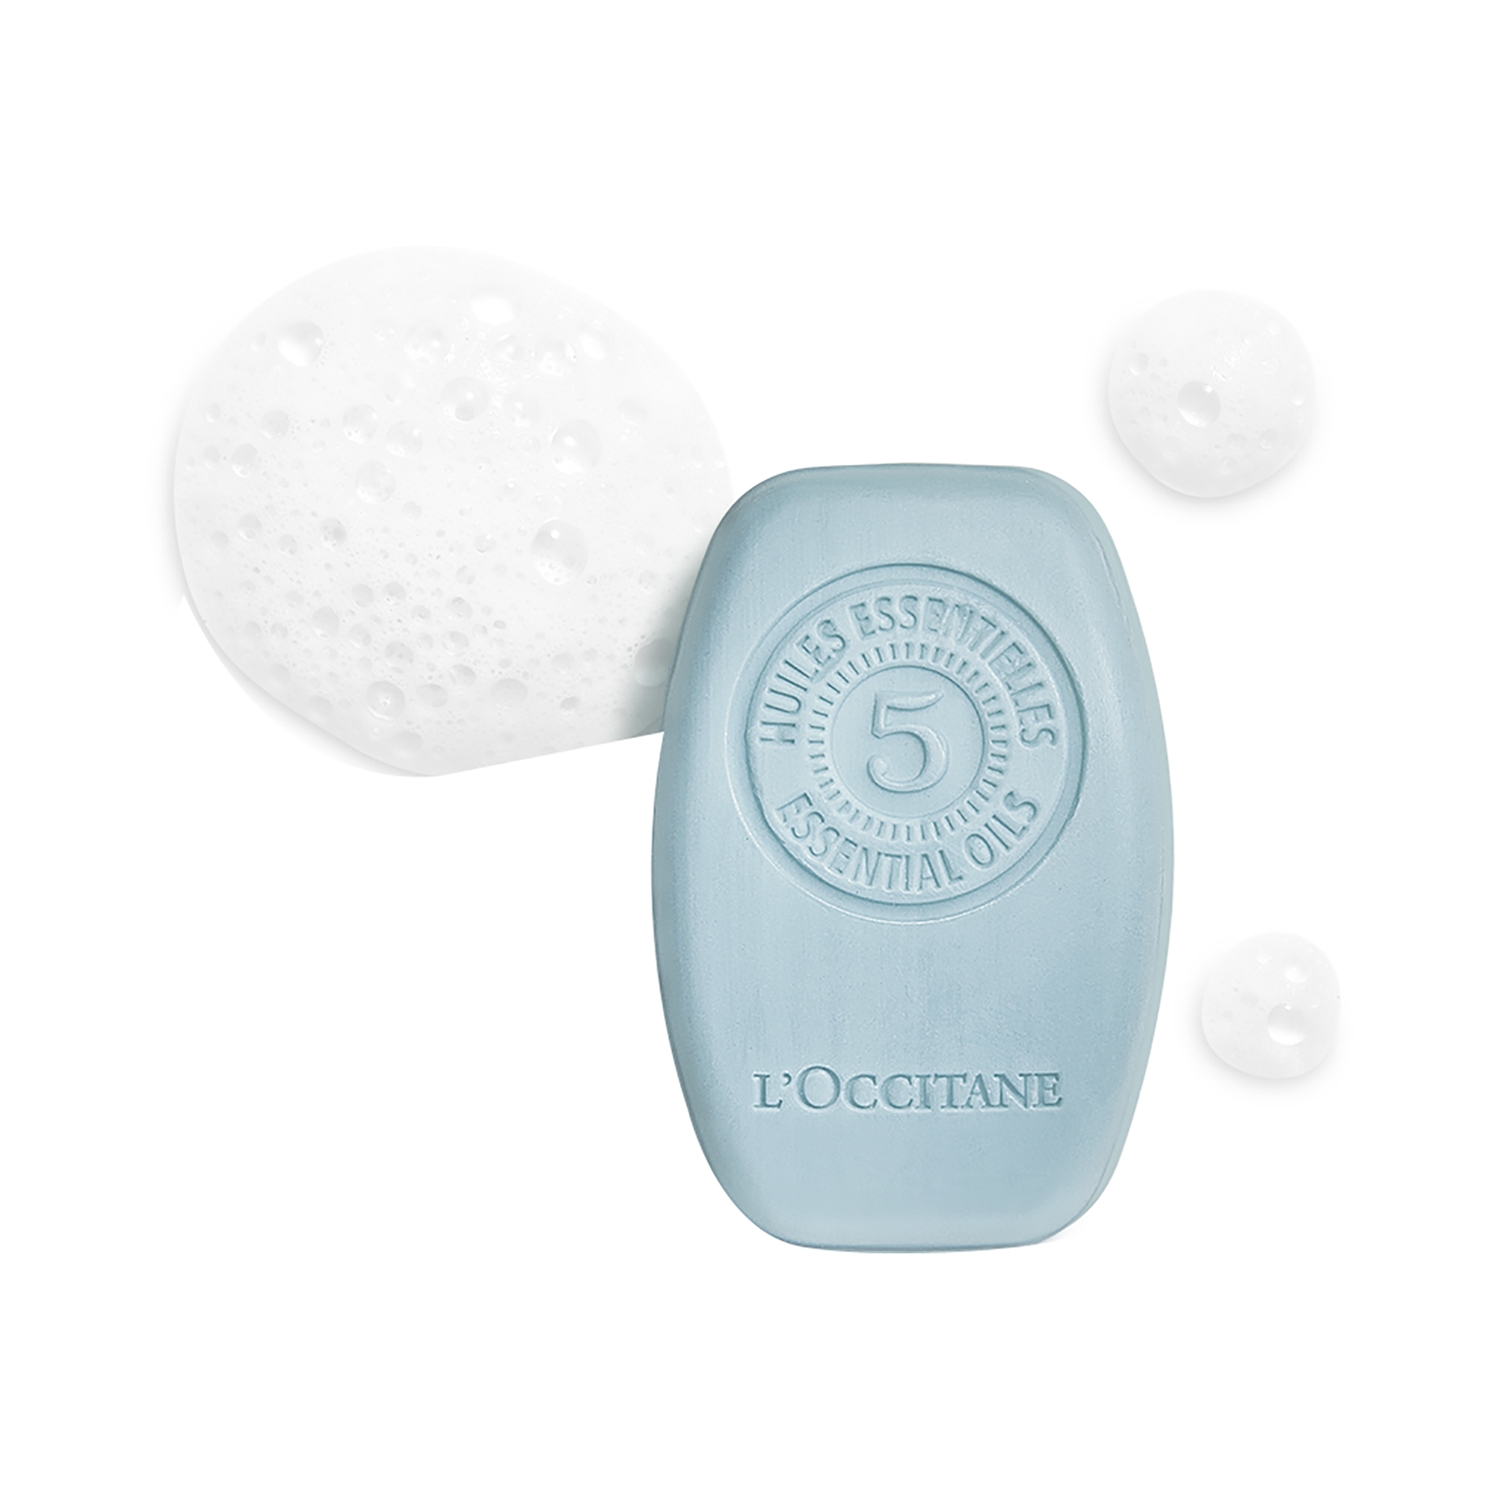 L'occitane | L'occitane Purifying Freshness Solid Shampoo (60g)